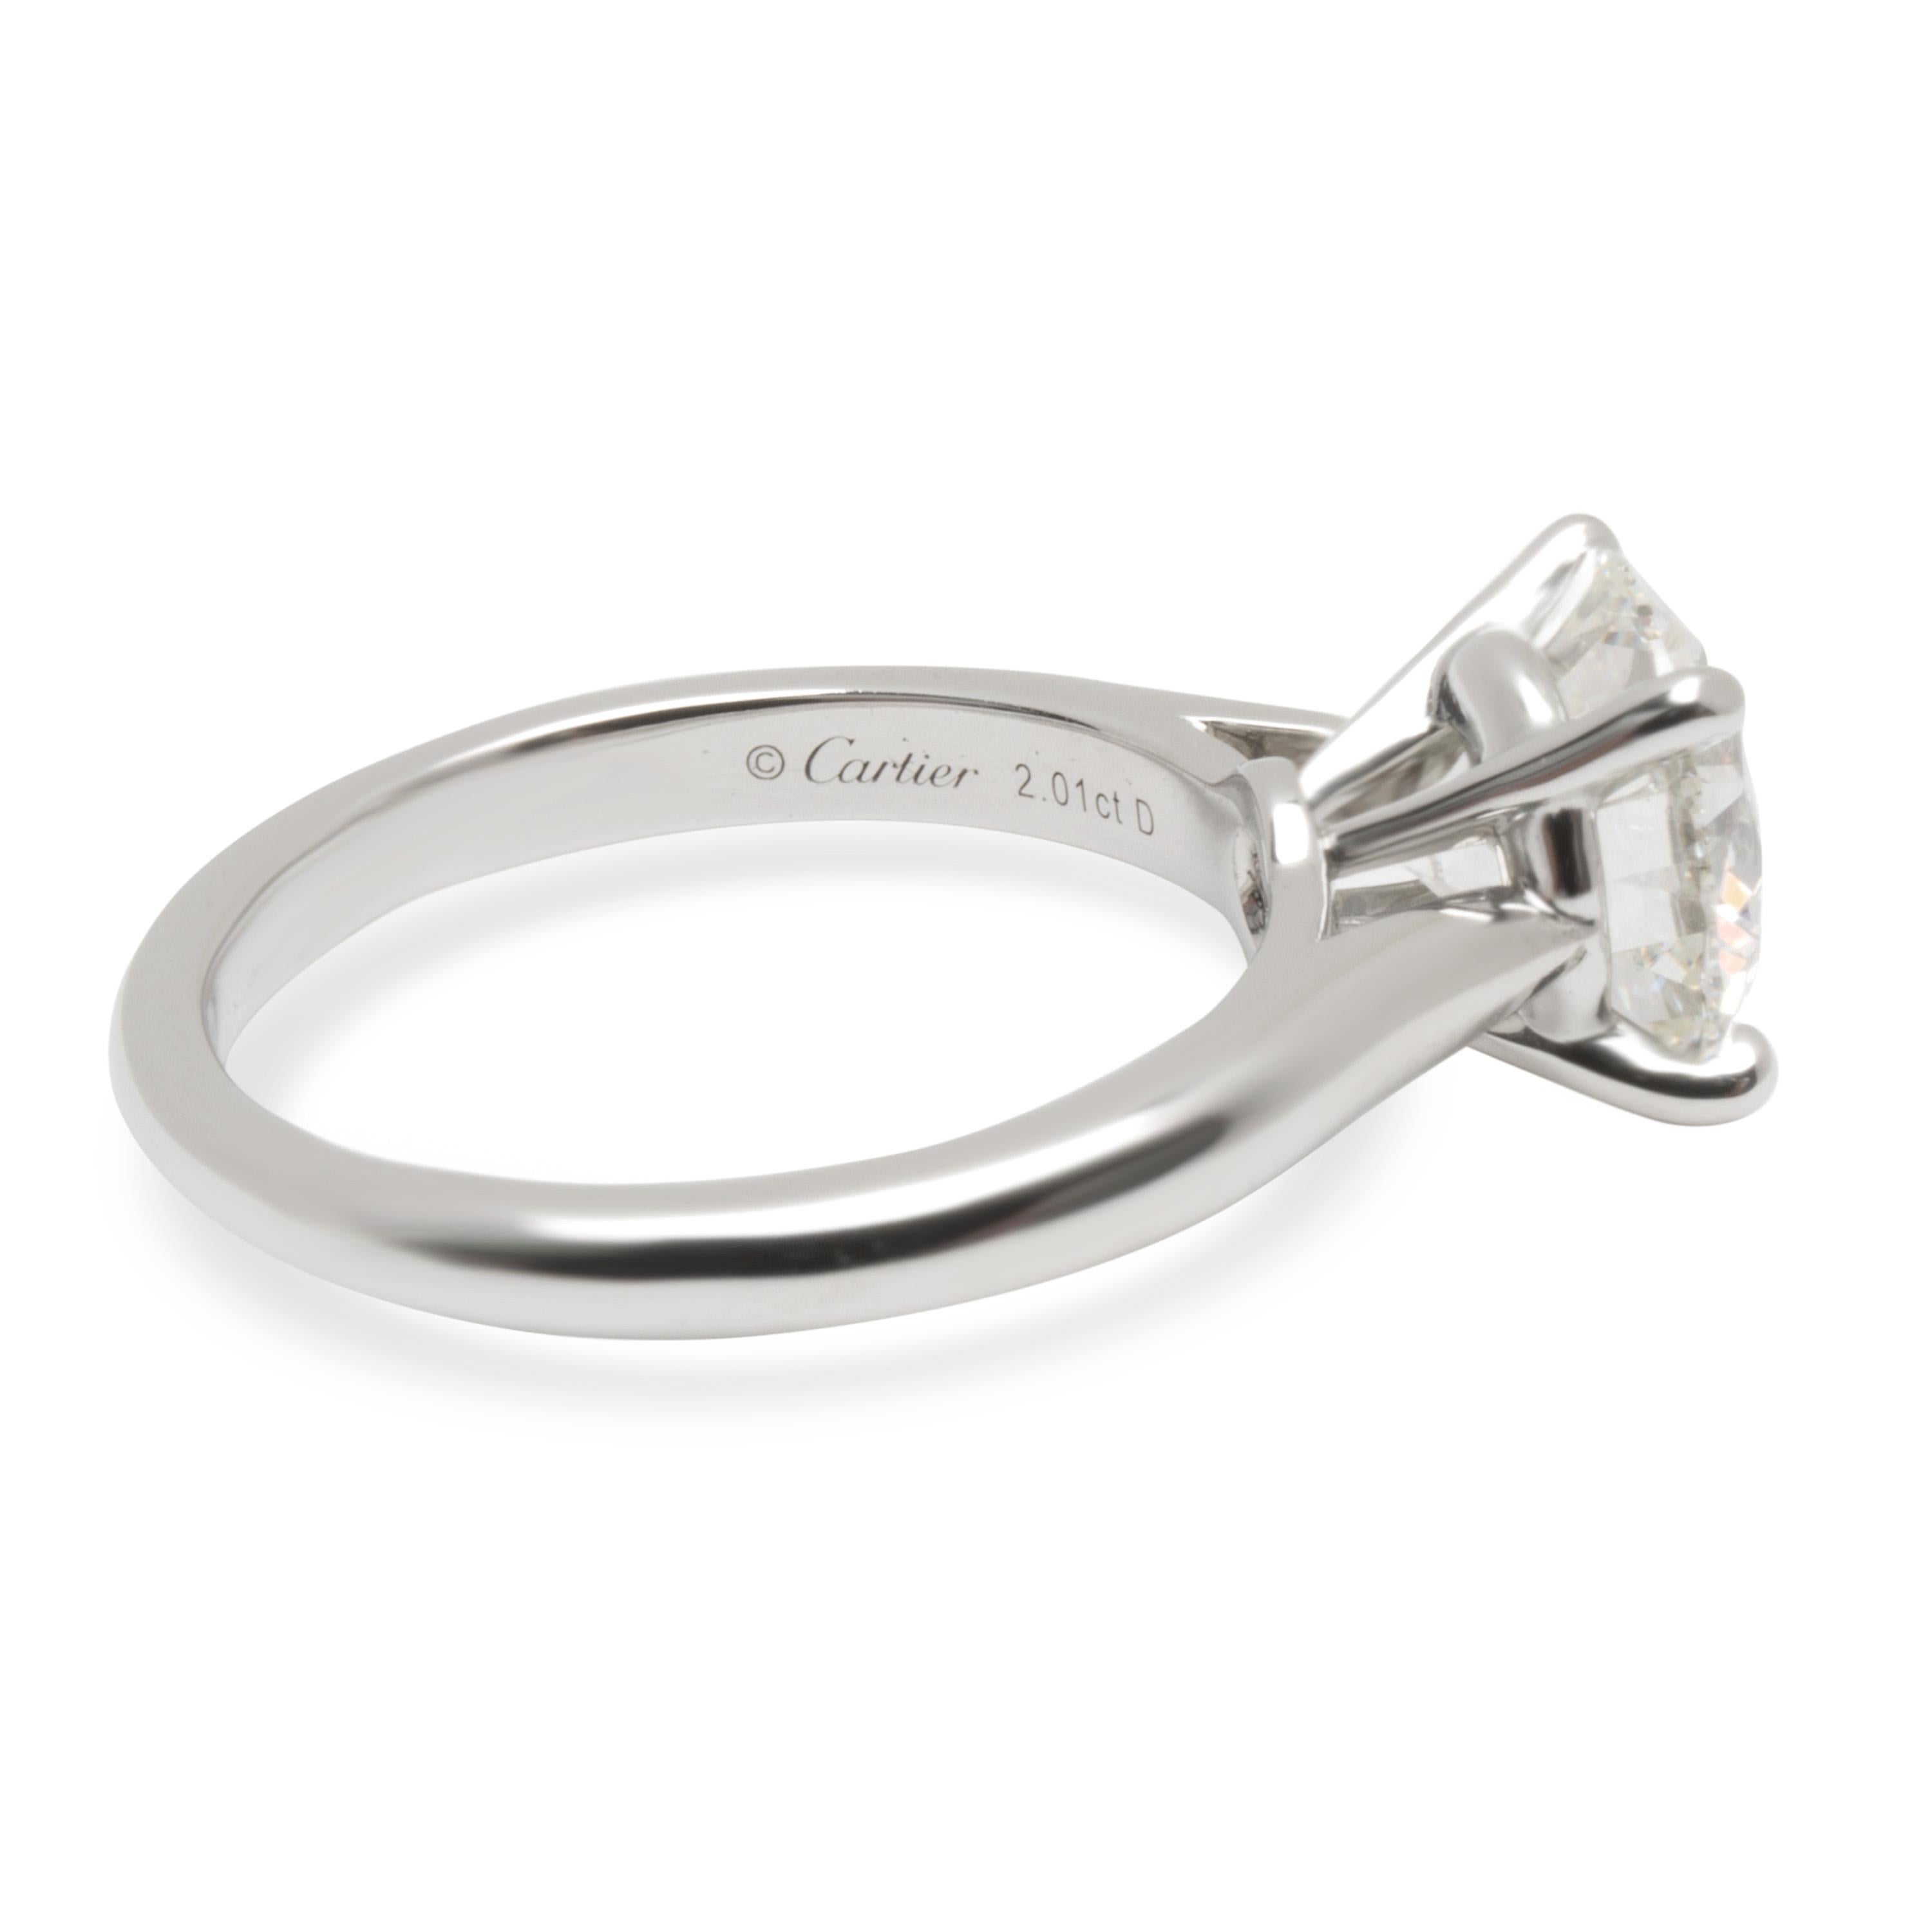 Round Cut Cartier Diamond Solitaire Engagement Ring in Platinum ‘2.01 Carat H/VS1’